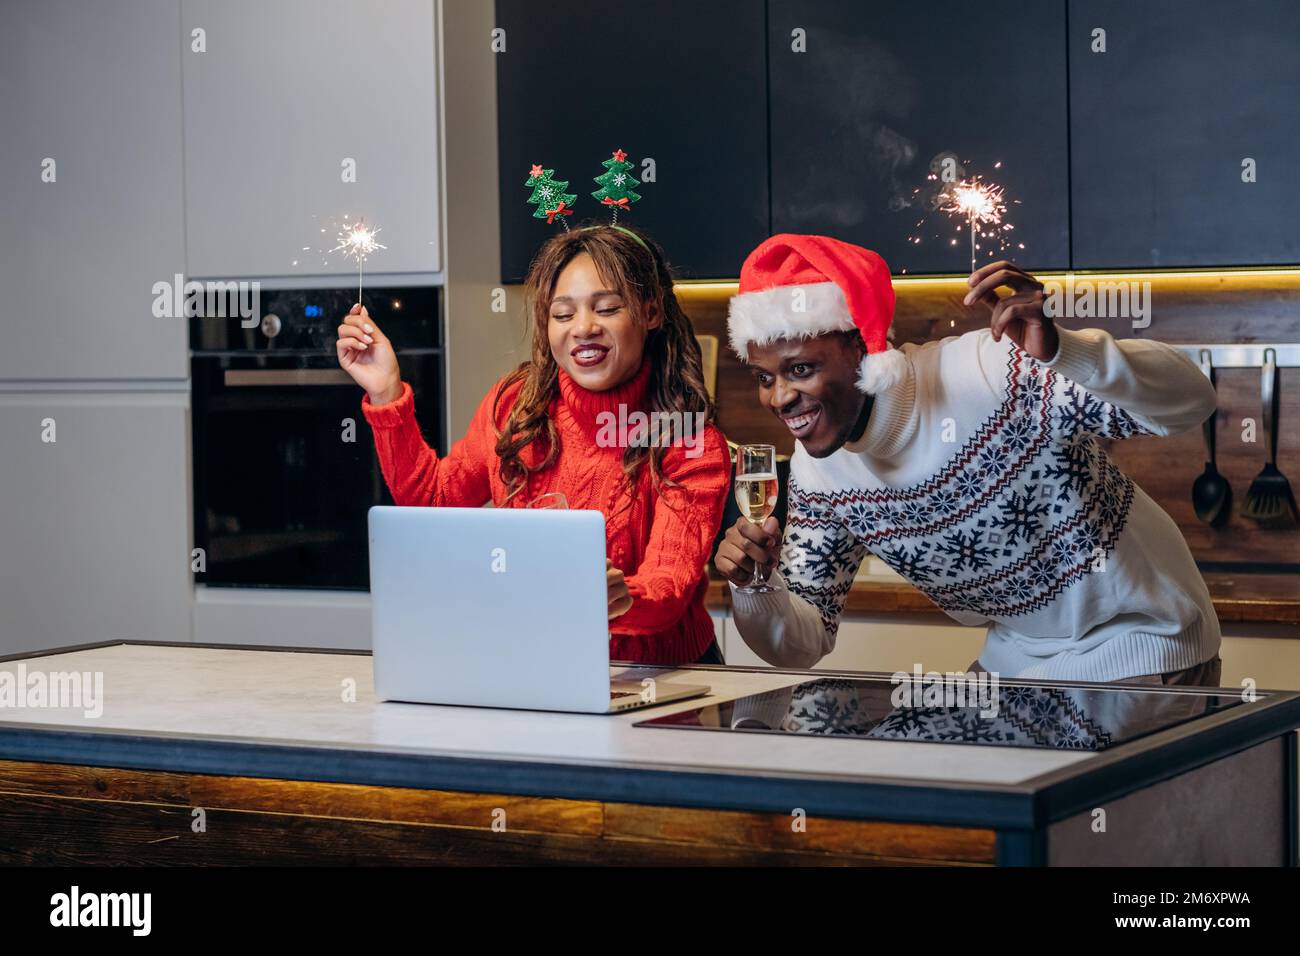 La joven pareja feliz mira los espectáculos festivos usando la computadora portátil y celebra la Navidad sosteniendo chispas y bebiendo champán en la cocina Foto de stock